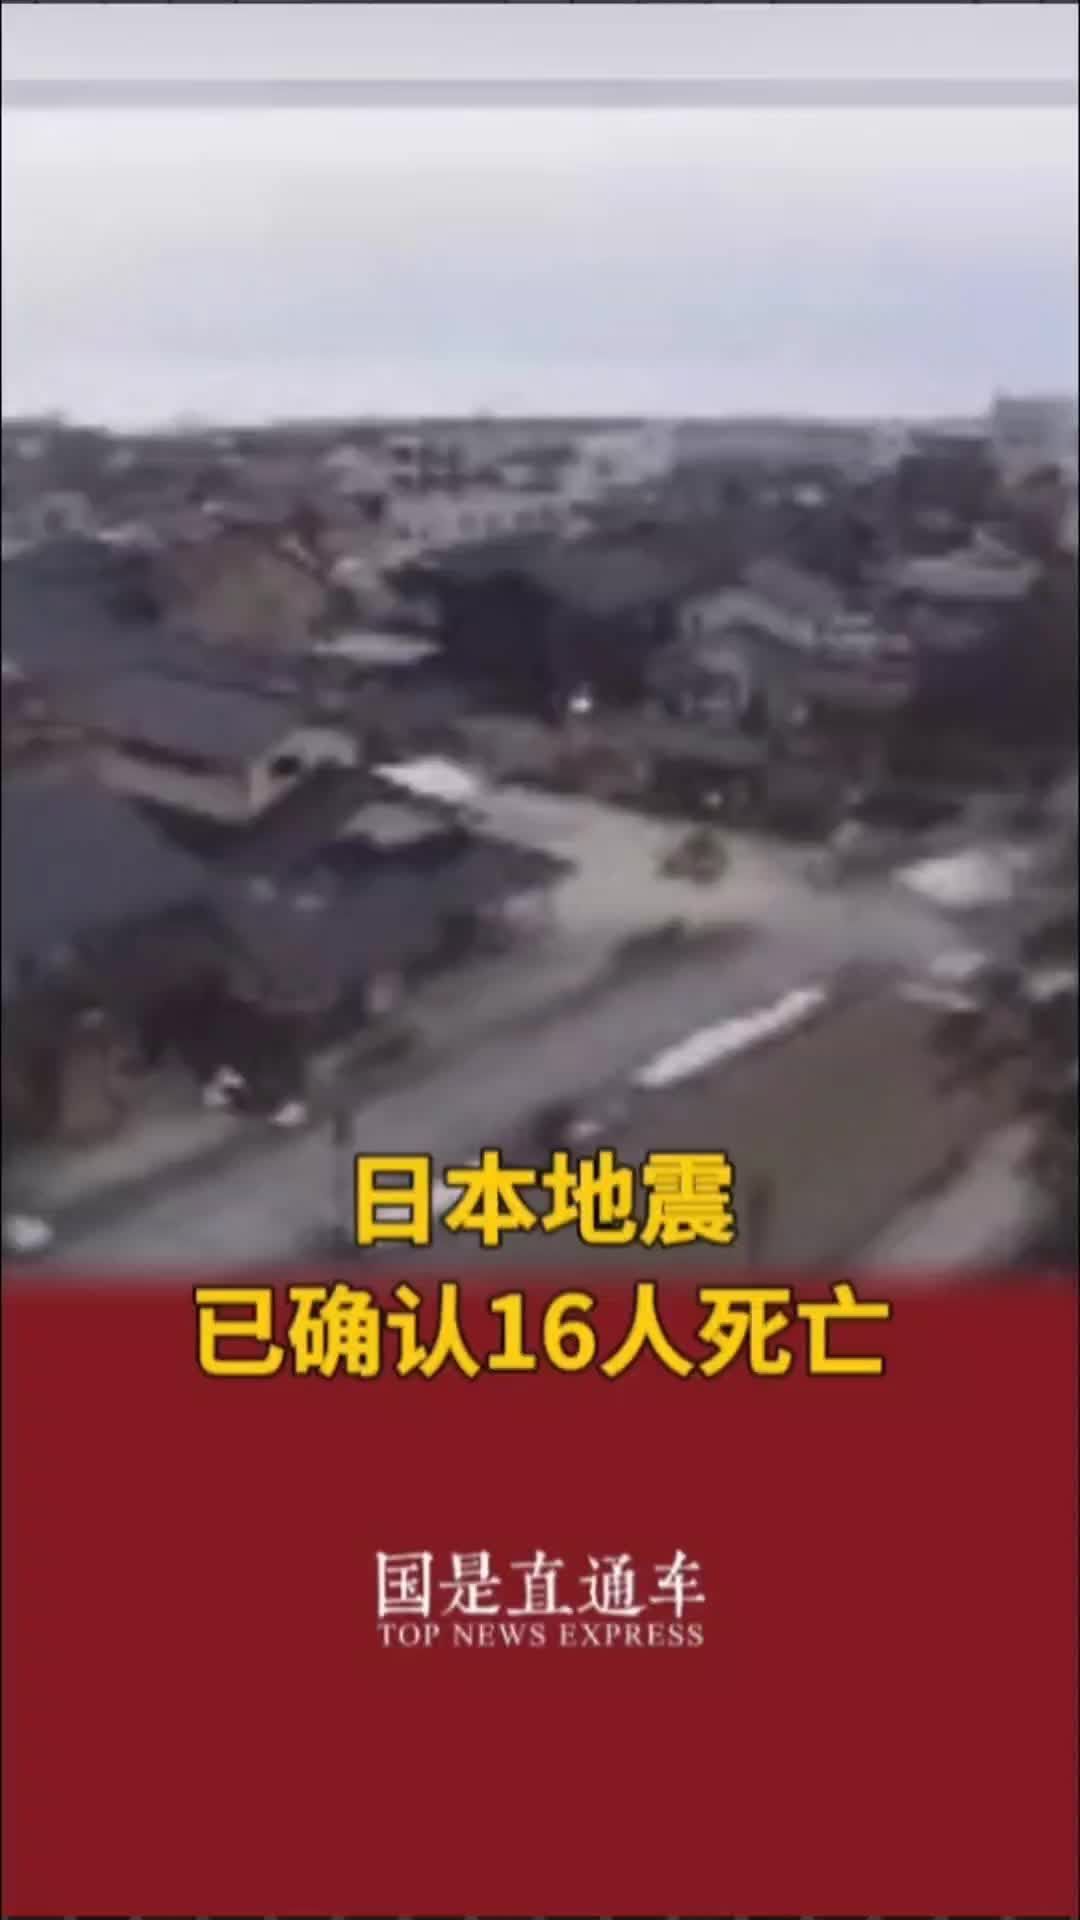 【沖縄】沖縄本島近海で連続した小規模な有感地震（2019/07/22） | itoito.style